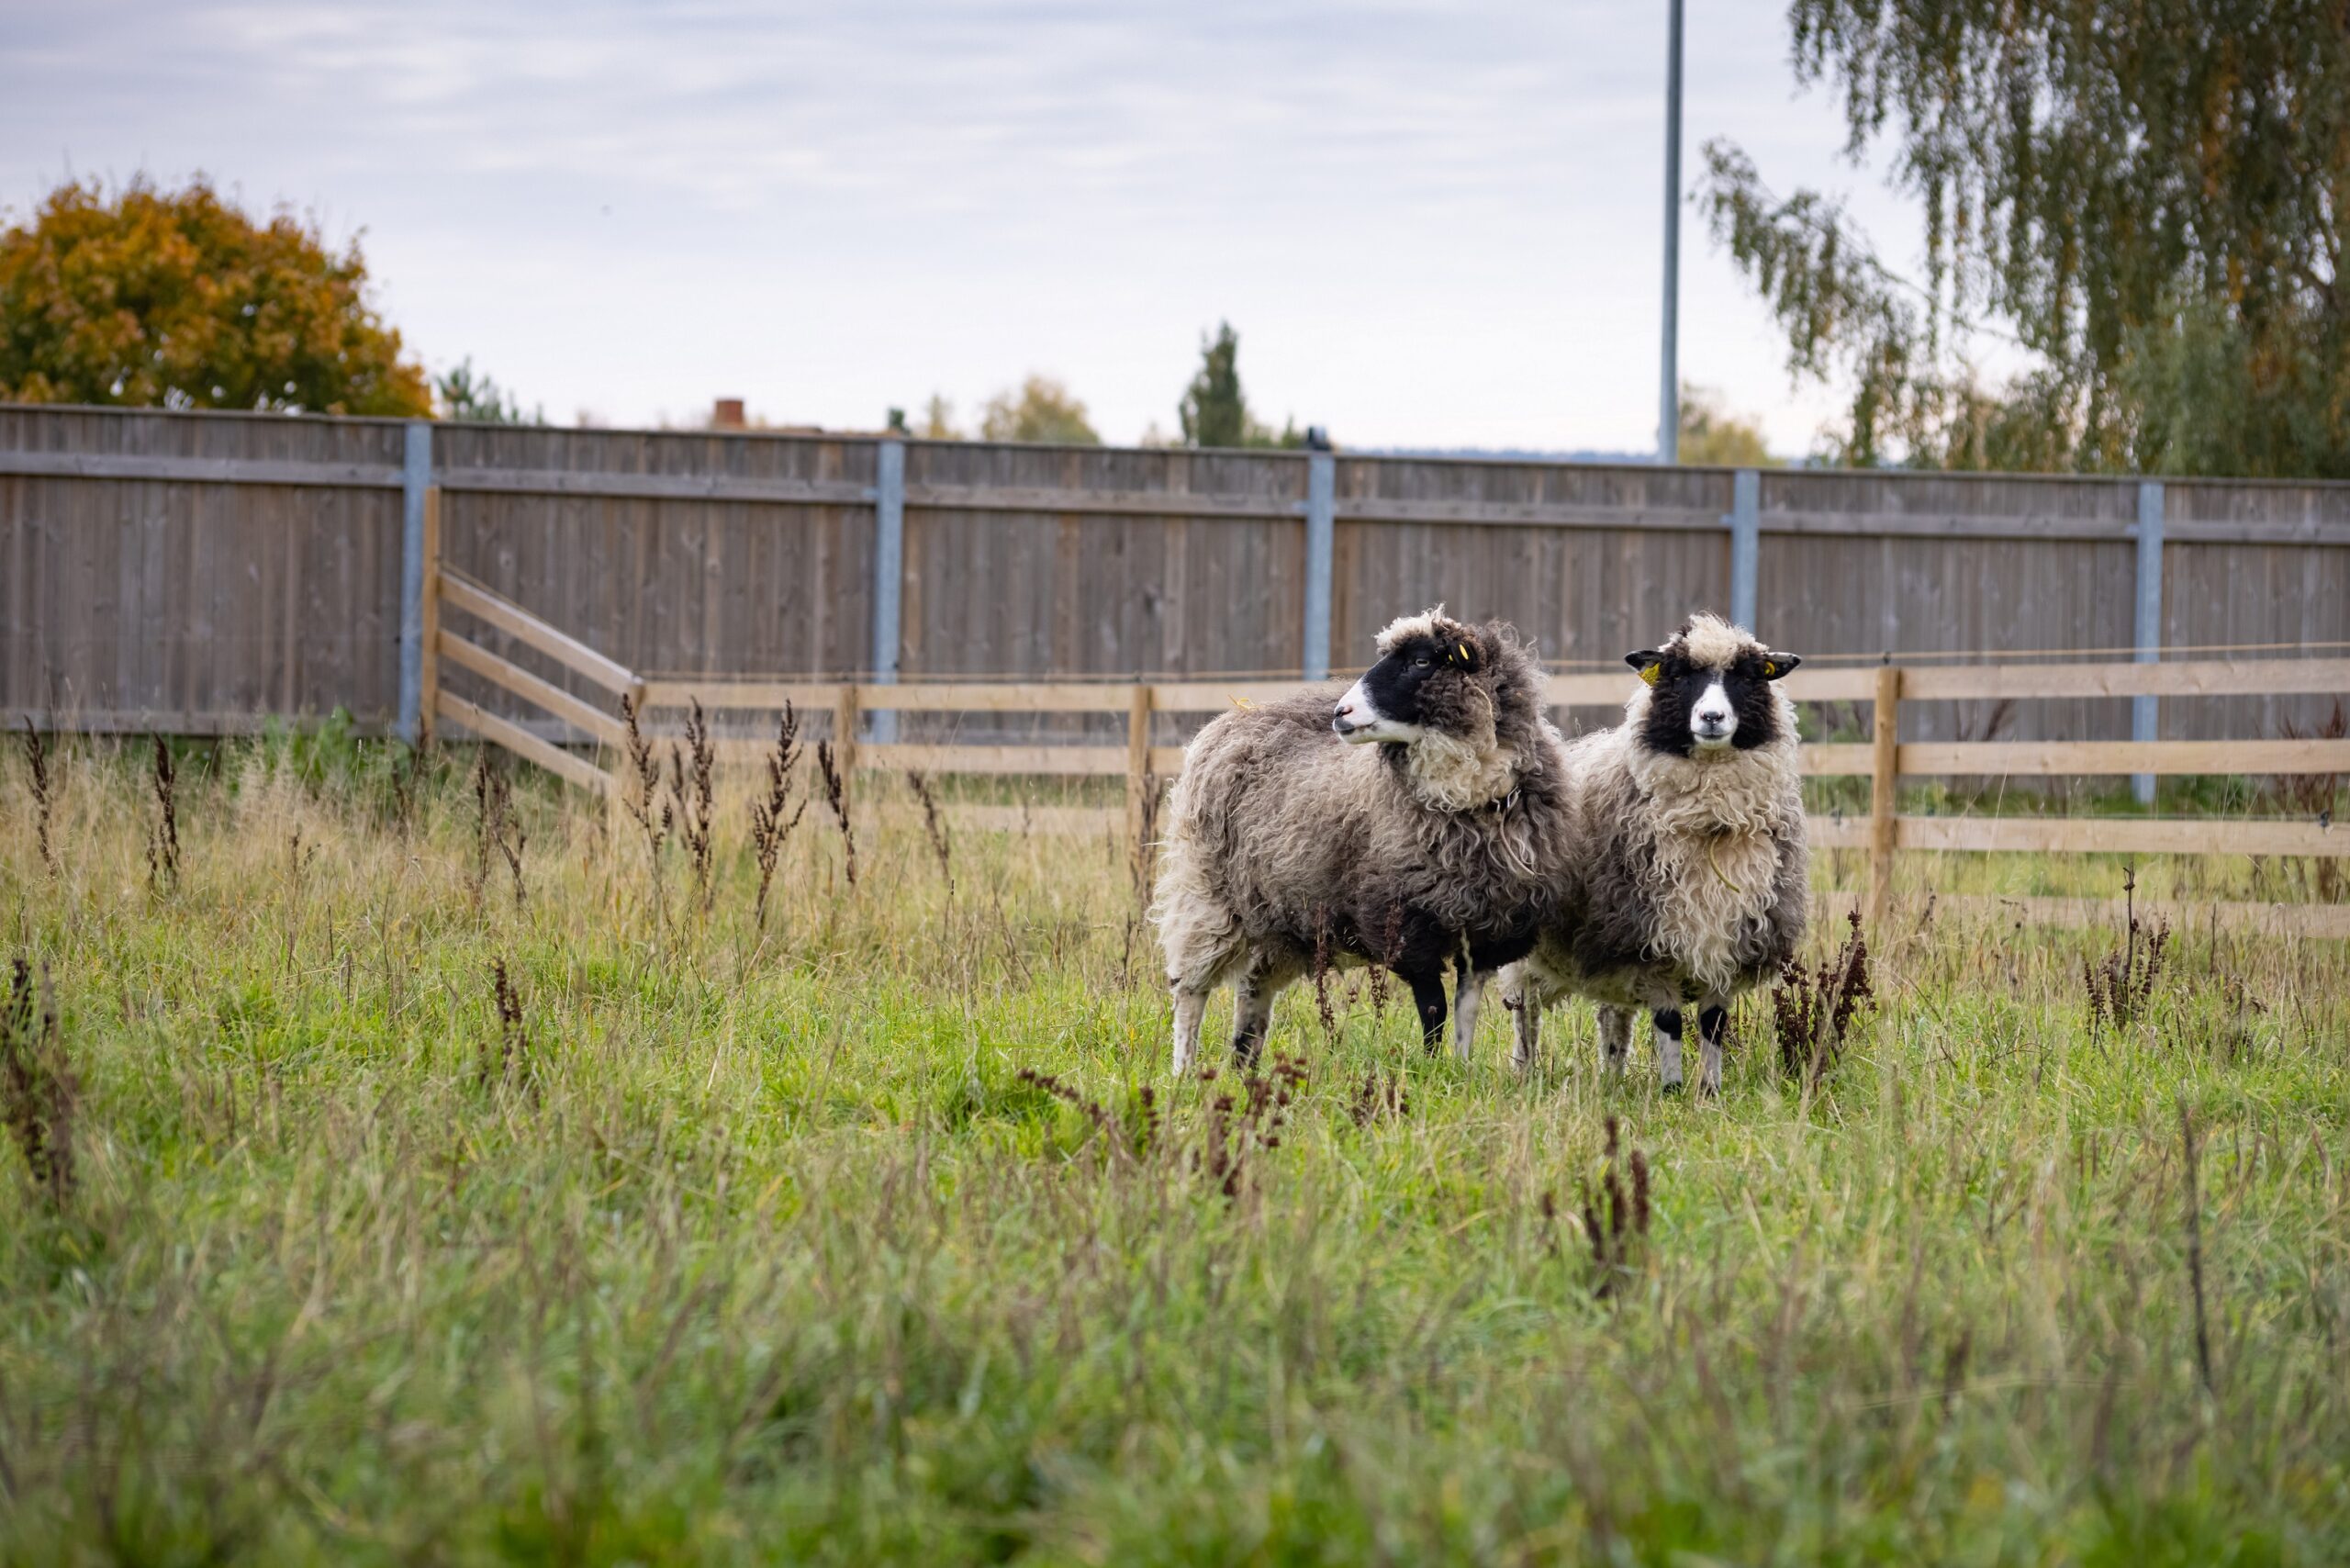 Täna tutvustame üht erilist ja armsat osa meie kultuuripärandist – kihnu maalammast. Need väiksed ja vastupidavad lambad on elanud Eestis juba üle 3000 aasta! K